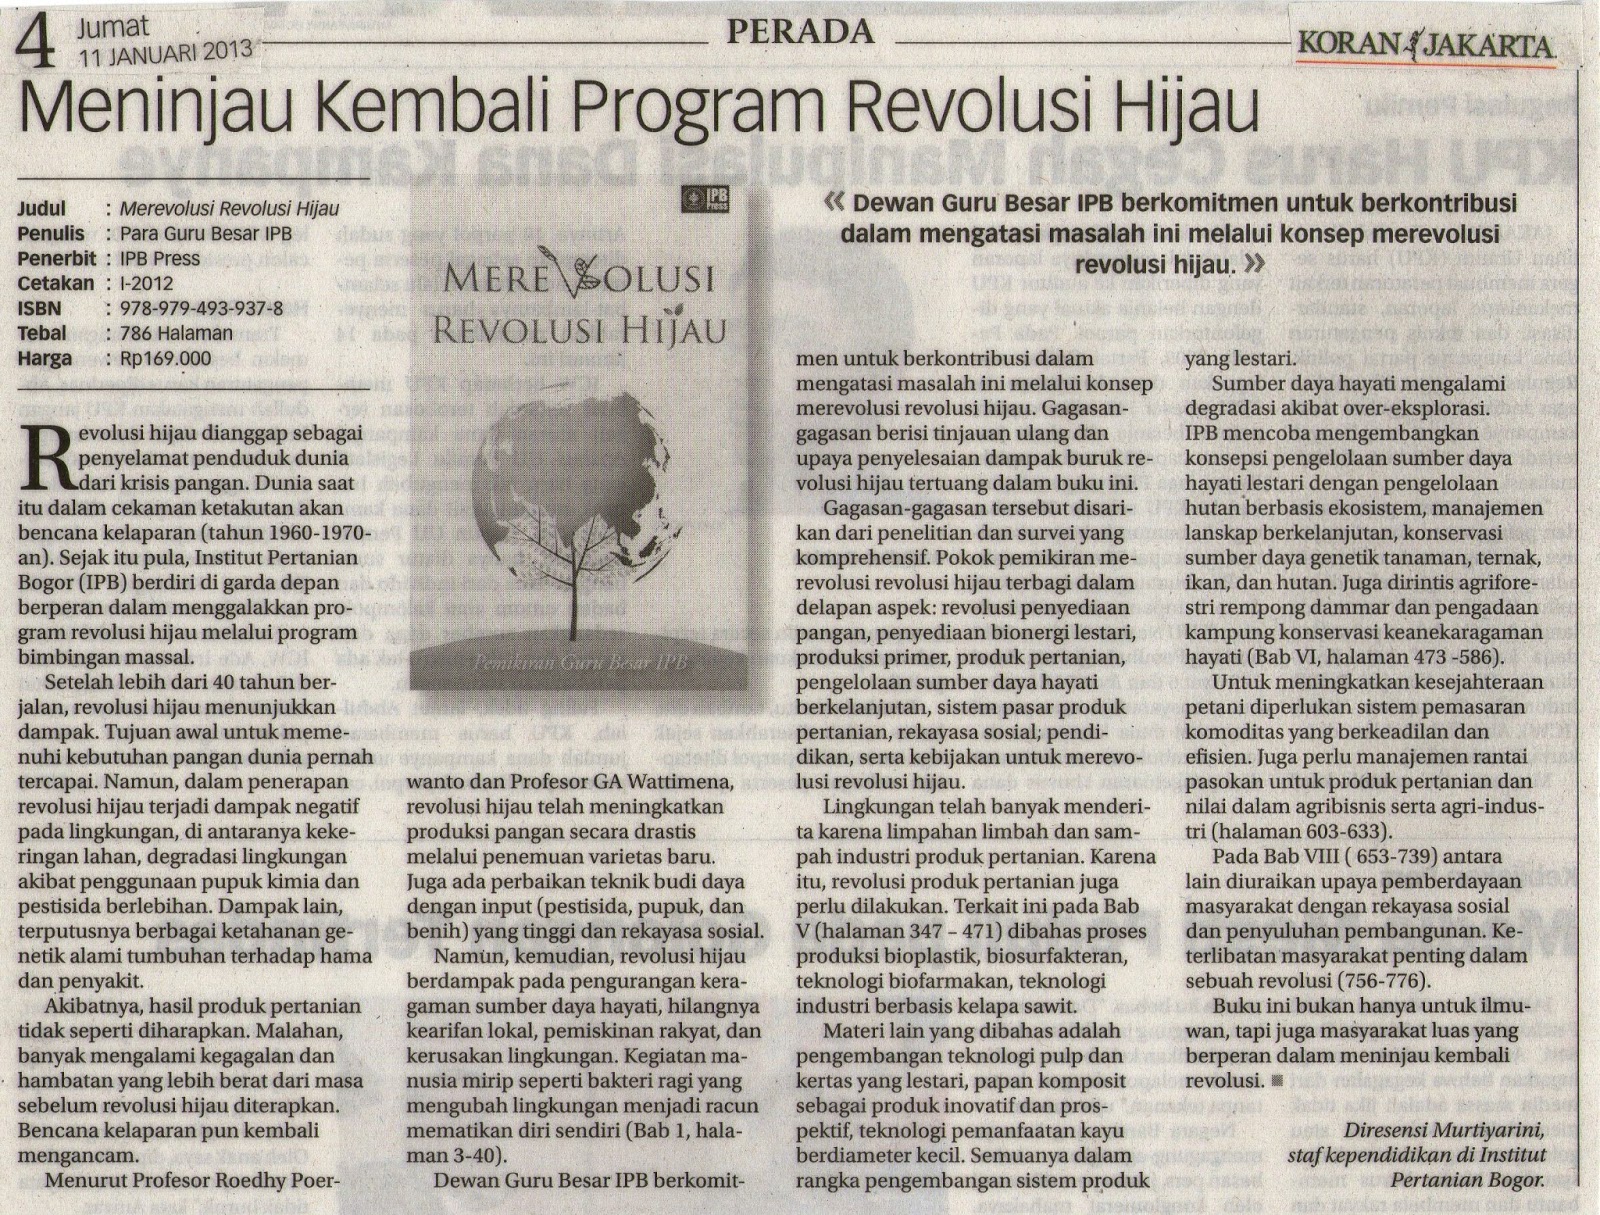 Hope and love for future: Meninjau Kembali Program 